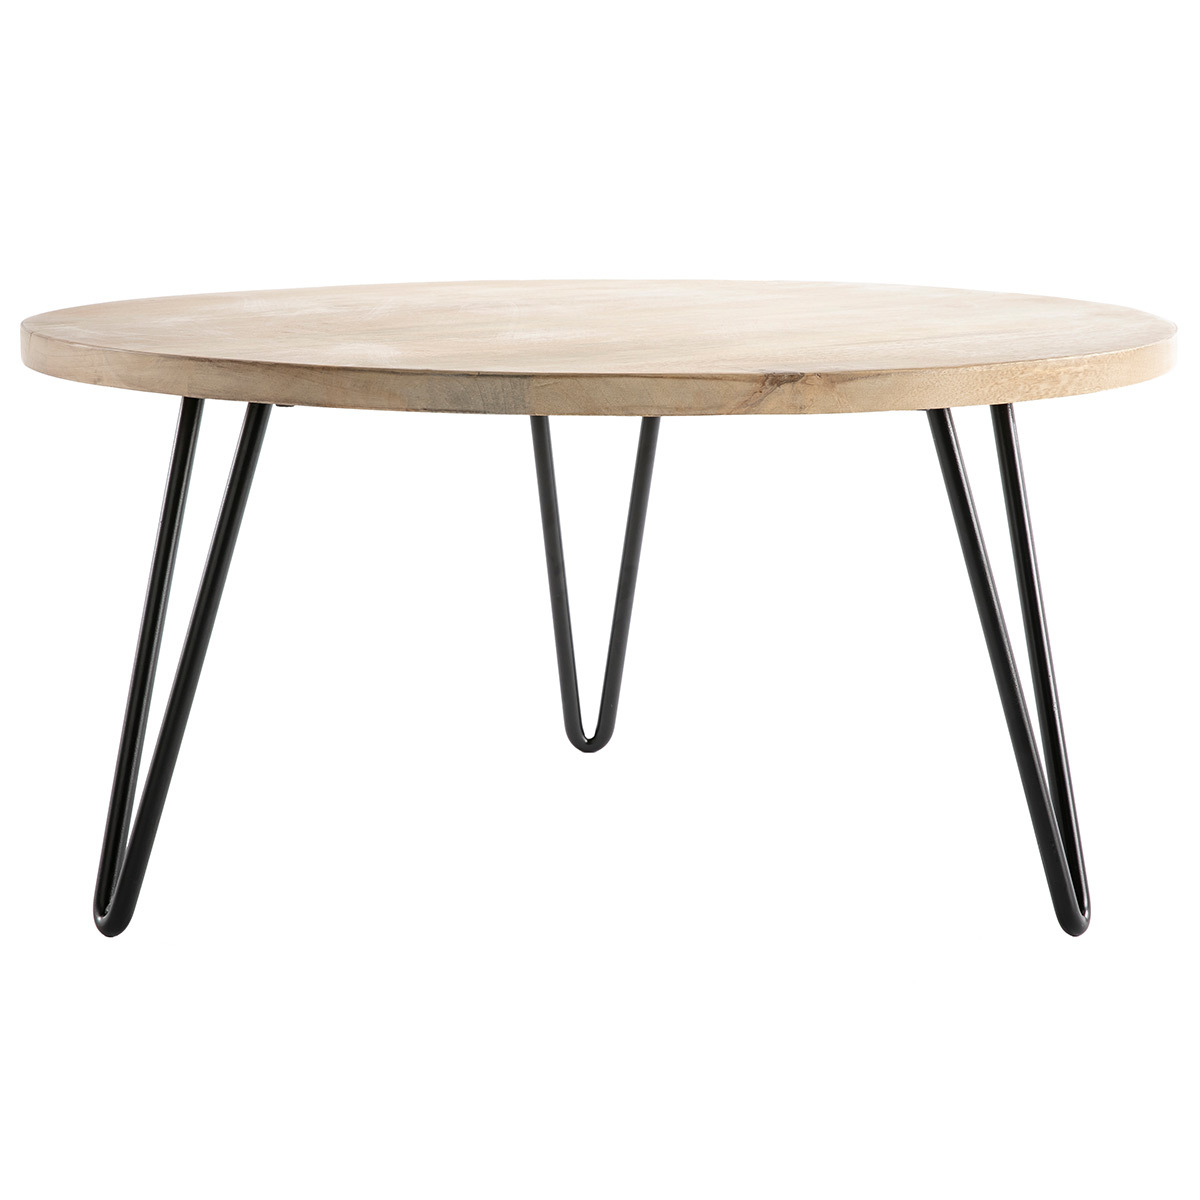 Table basse ronde bois clair manguier massif et métal noir D80 cm VIBES vue1